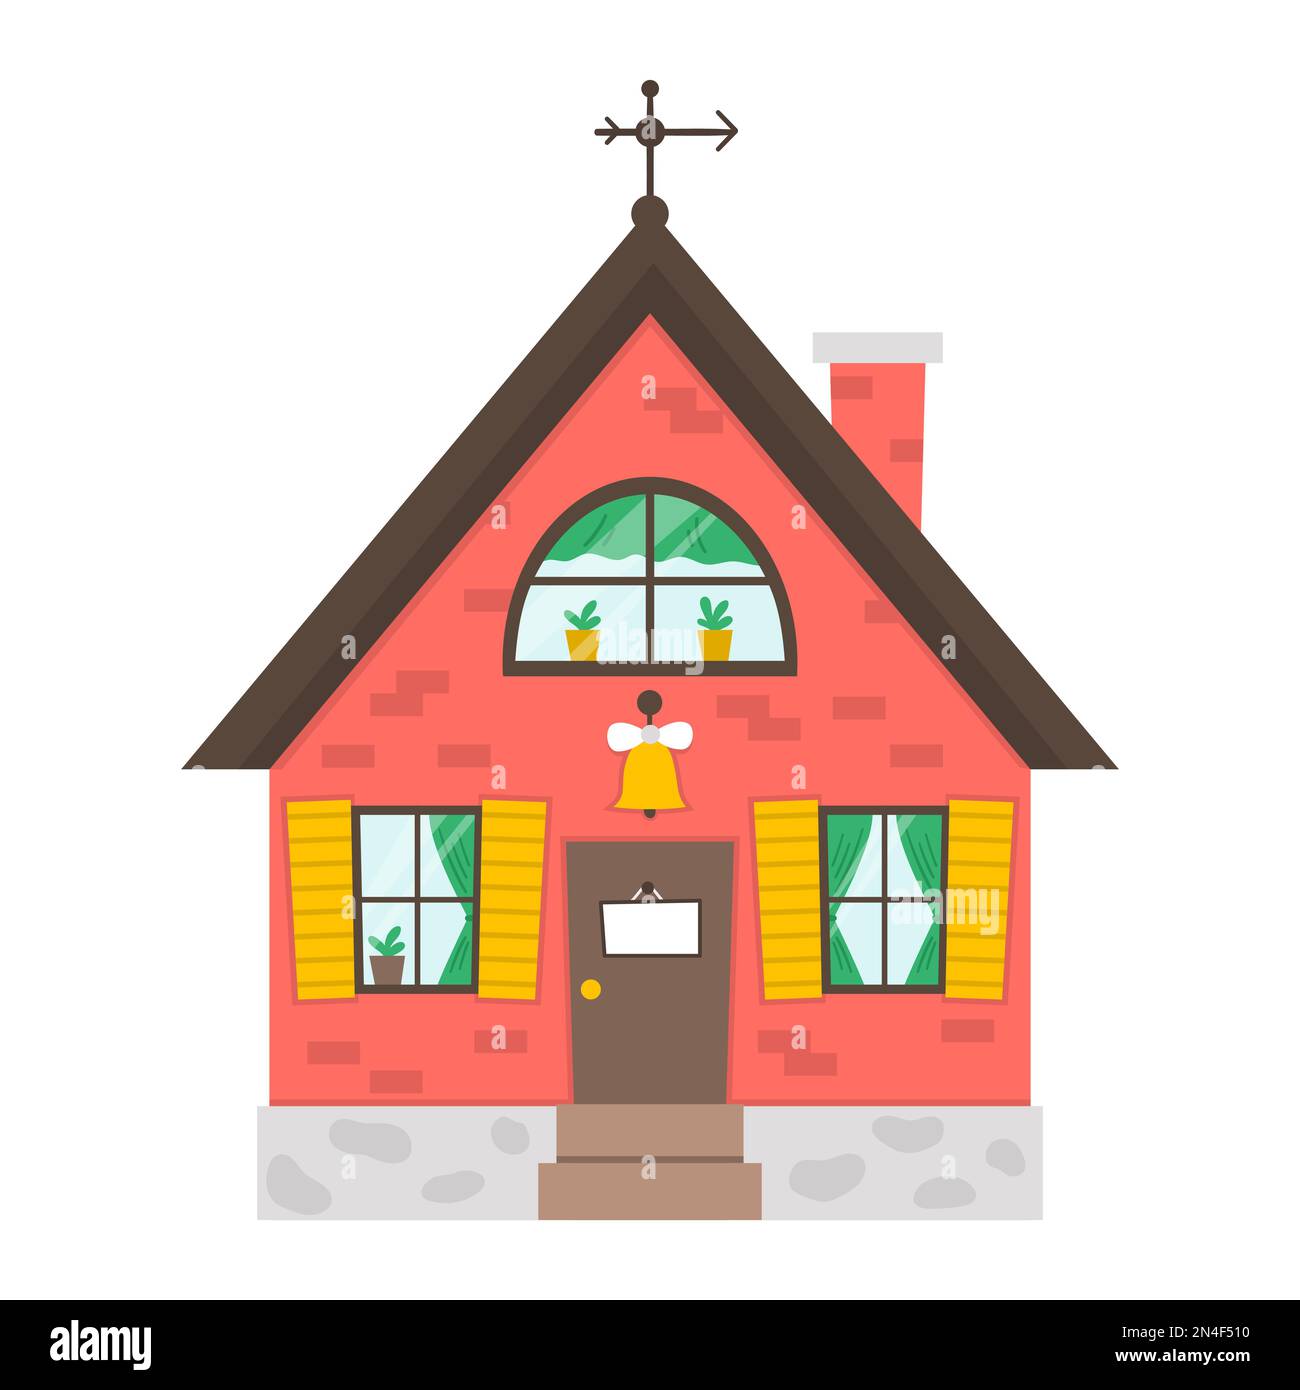 Vektorsymbol des Landhauses isoliert auf weißem Hintergrund. Abbildung eines flachen Landhauses. Süßes rotes Ziegelhaus mit Türklingel, Teller, Fenstern, Vorhängen. R Stock Vektor